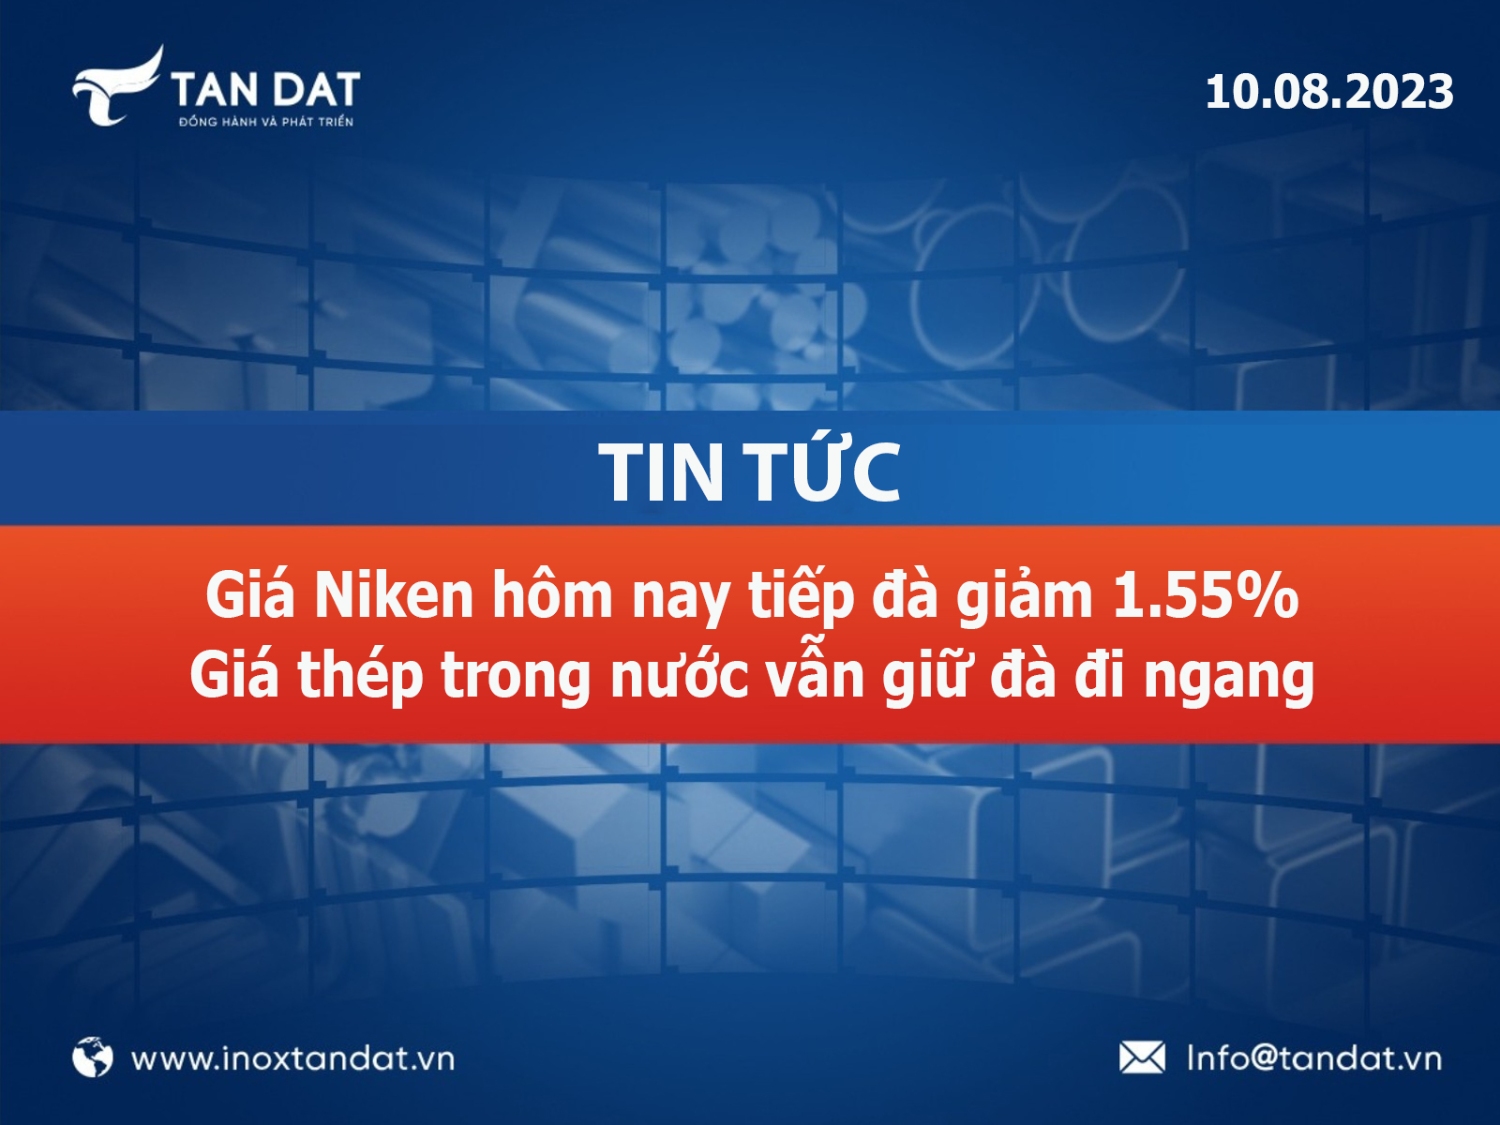 TIN TUC 108